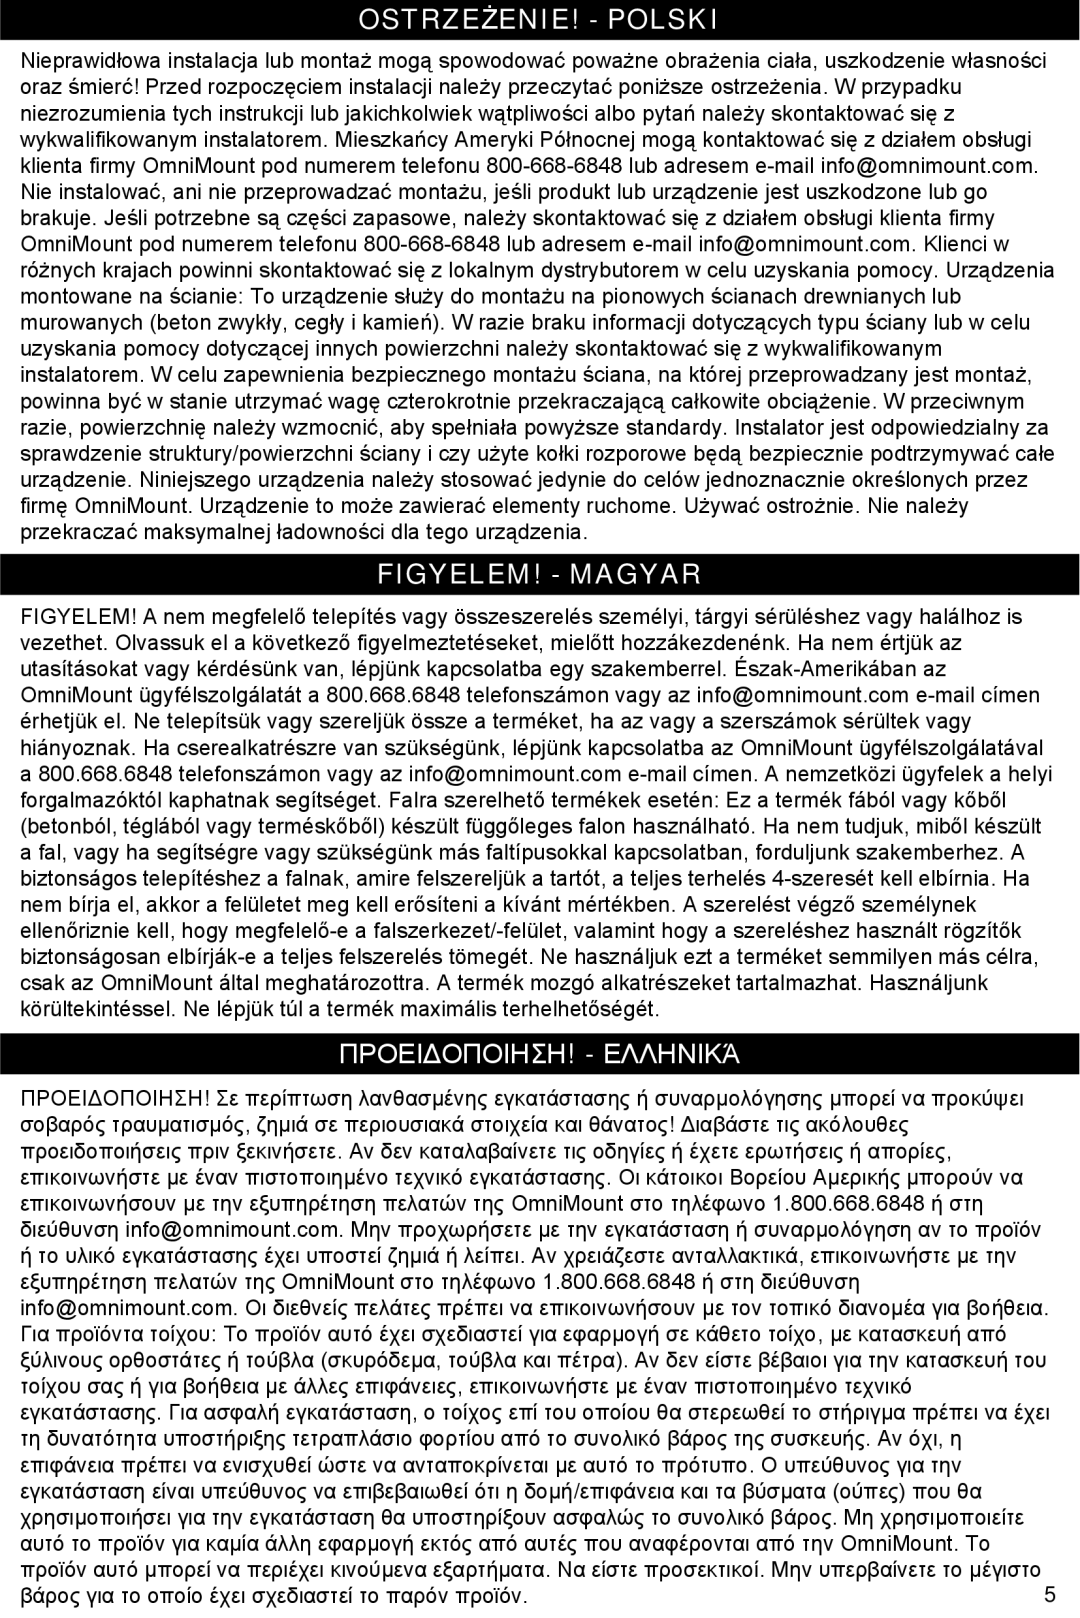 Omnimount Gemini 2 instruction manual Ostrzeżenie! - Polski, Figyelem! - Magyar, Προειδοποιηση! - Ελληνικά 